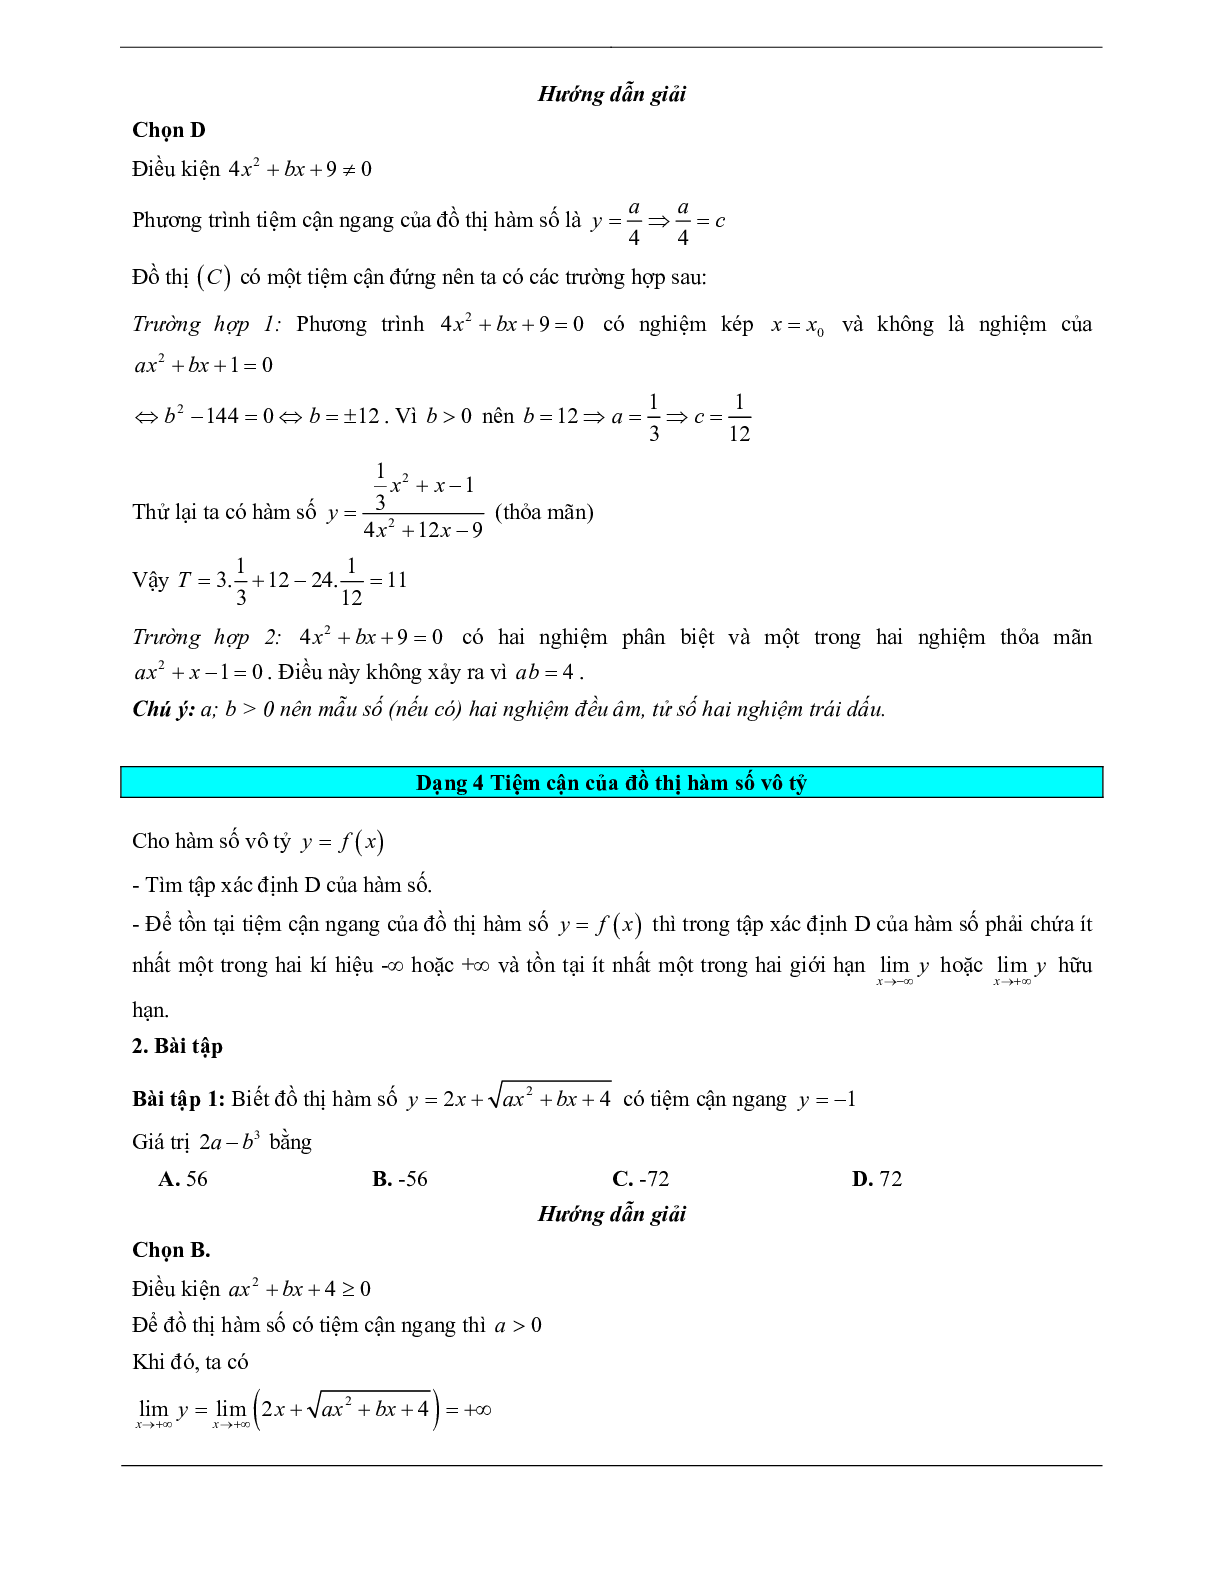 Các dạng bài tập trắc nghiệm về VDC đường tiệm cận của đồ thị hàm số (trang 7)